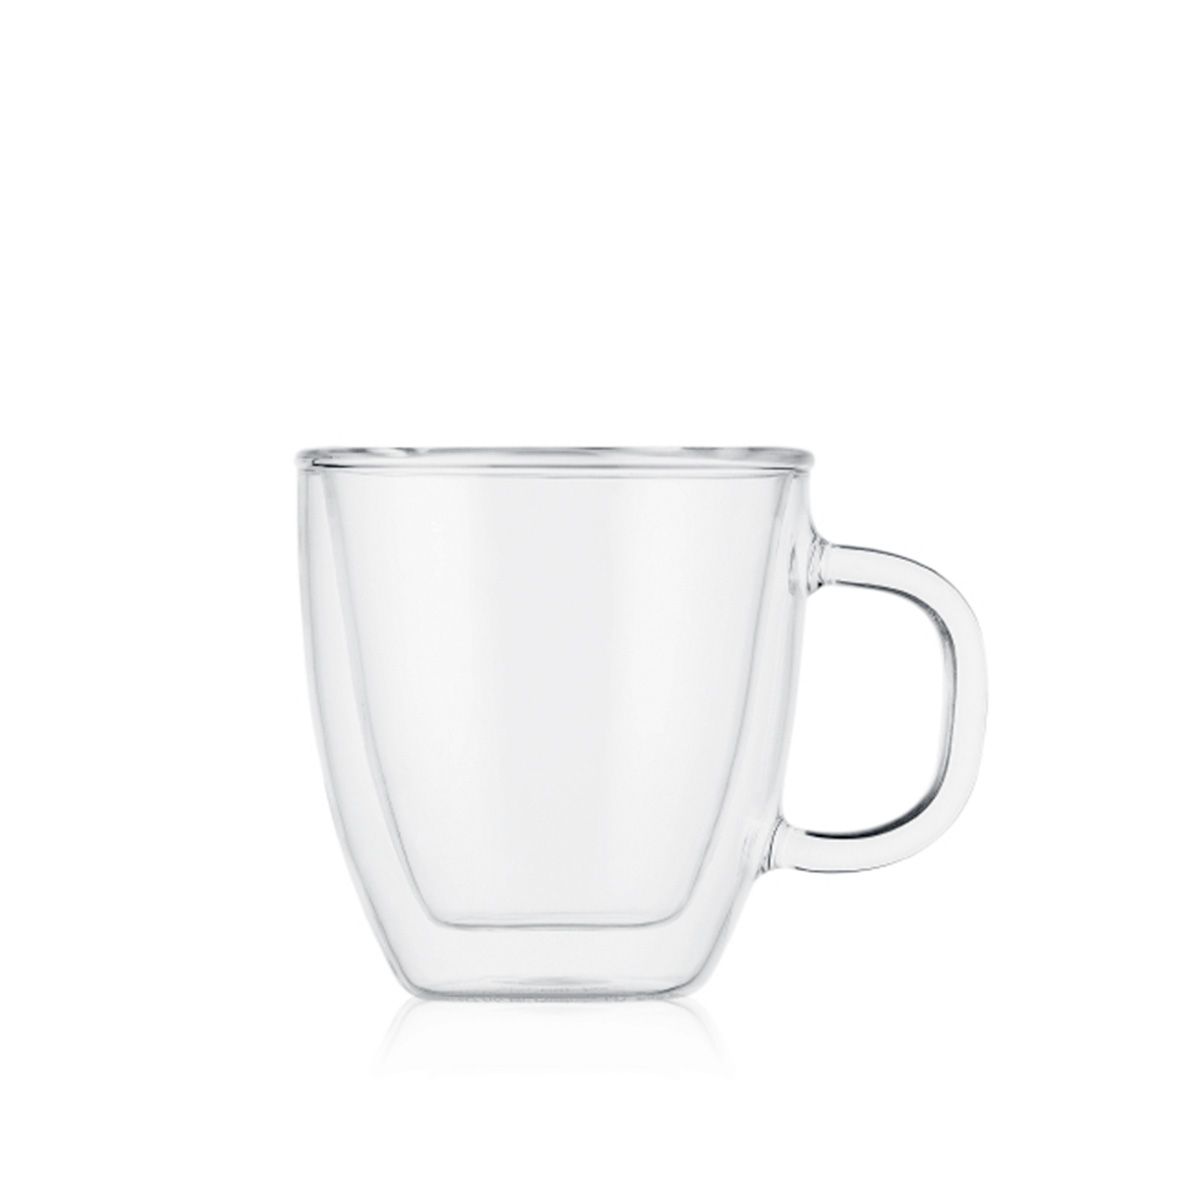 BODUM Bodum Bistro Espresso Cup Glass Mug 6 Ounce Blue Plastic Handle Set Of 2 